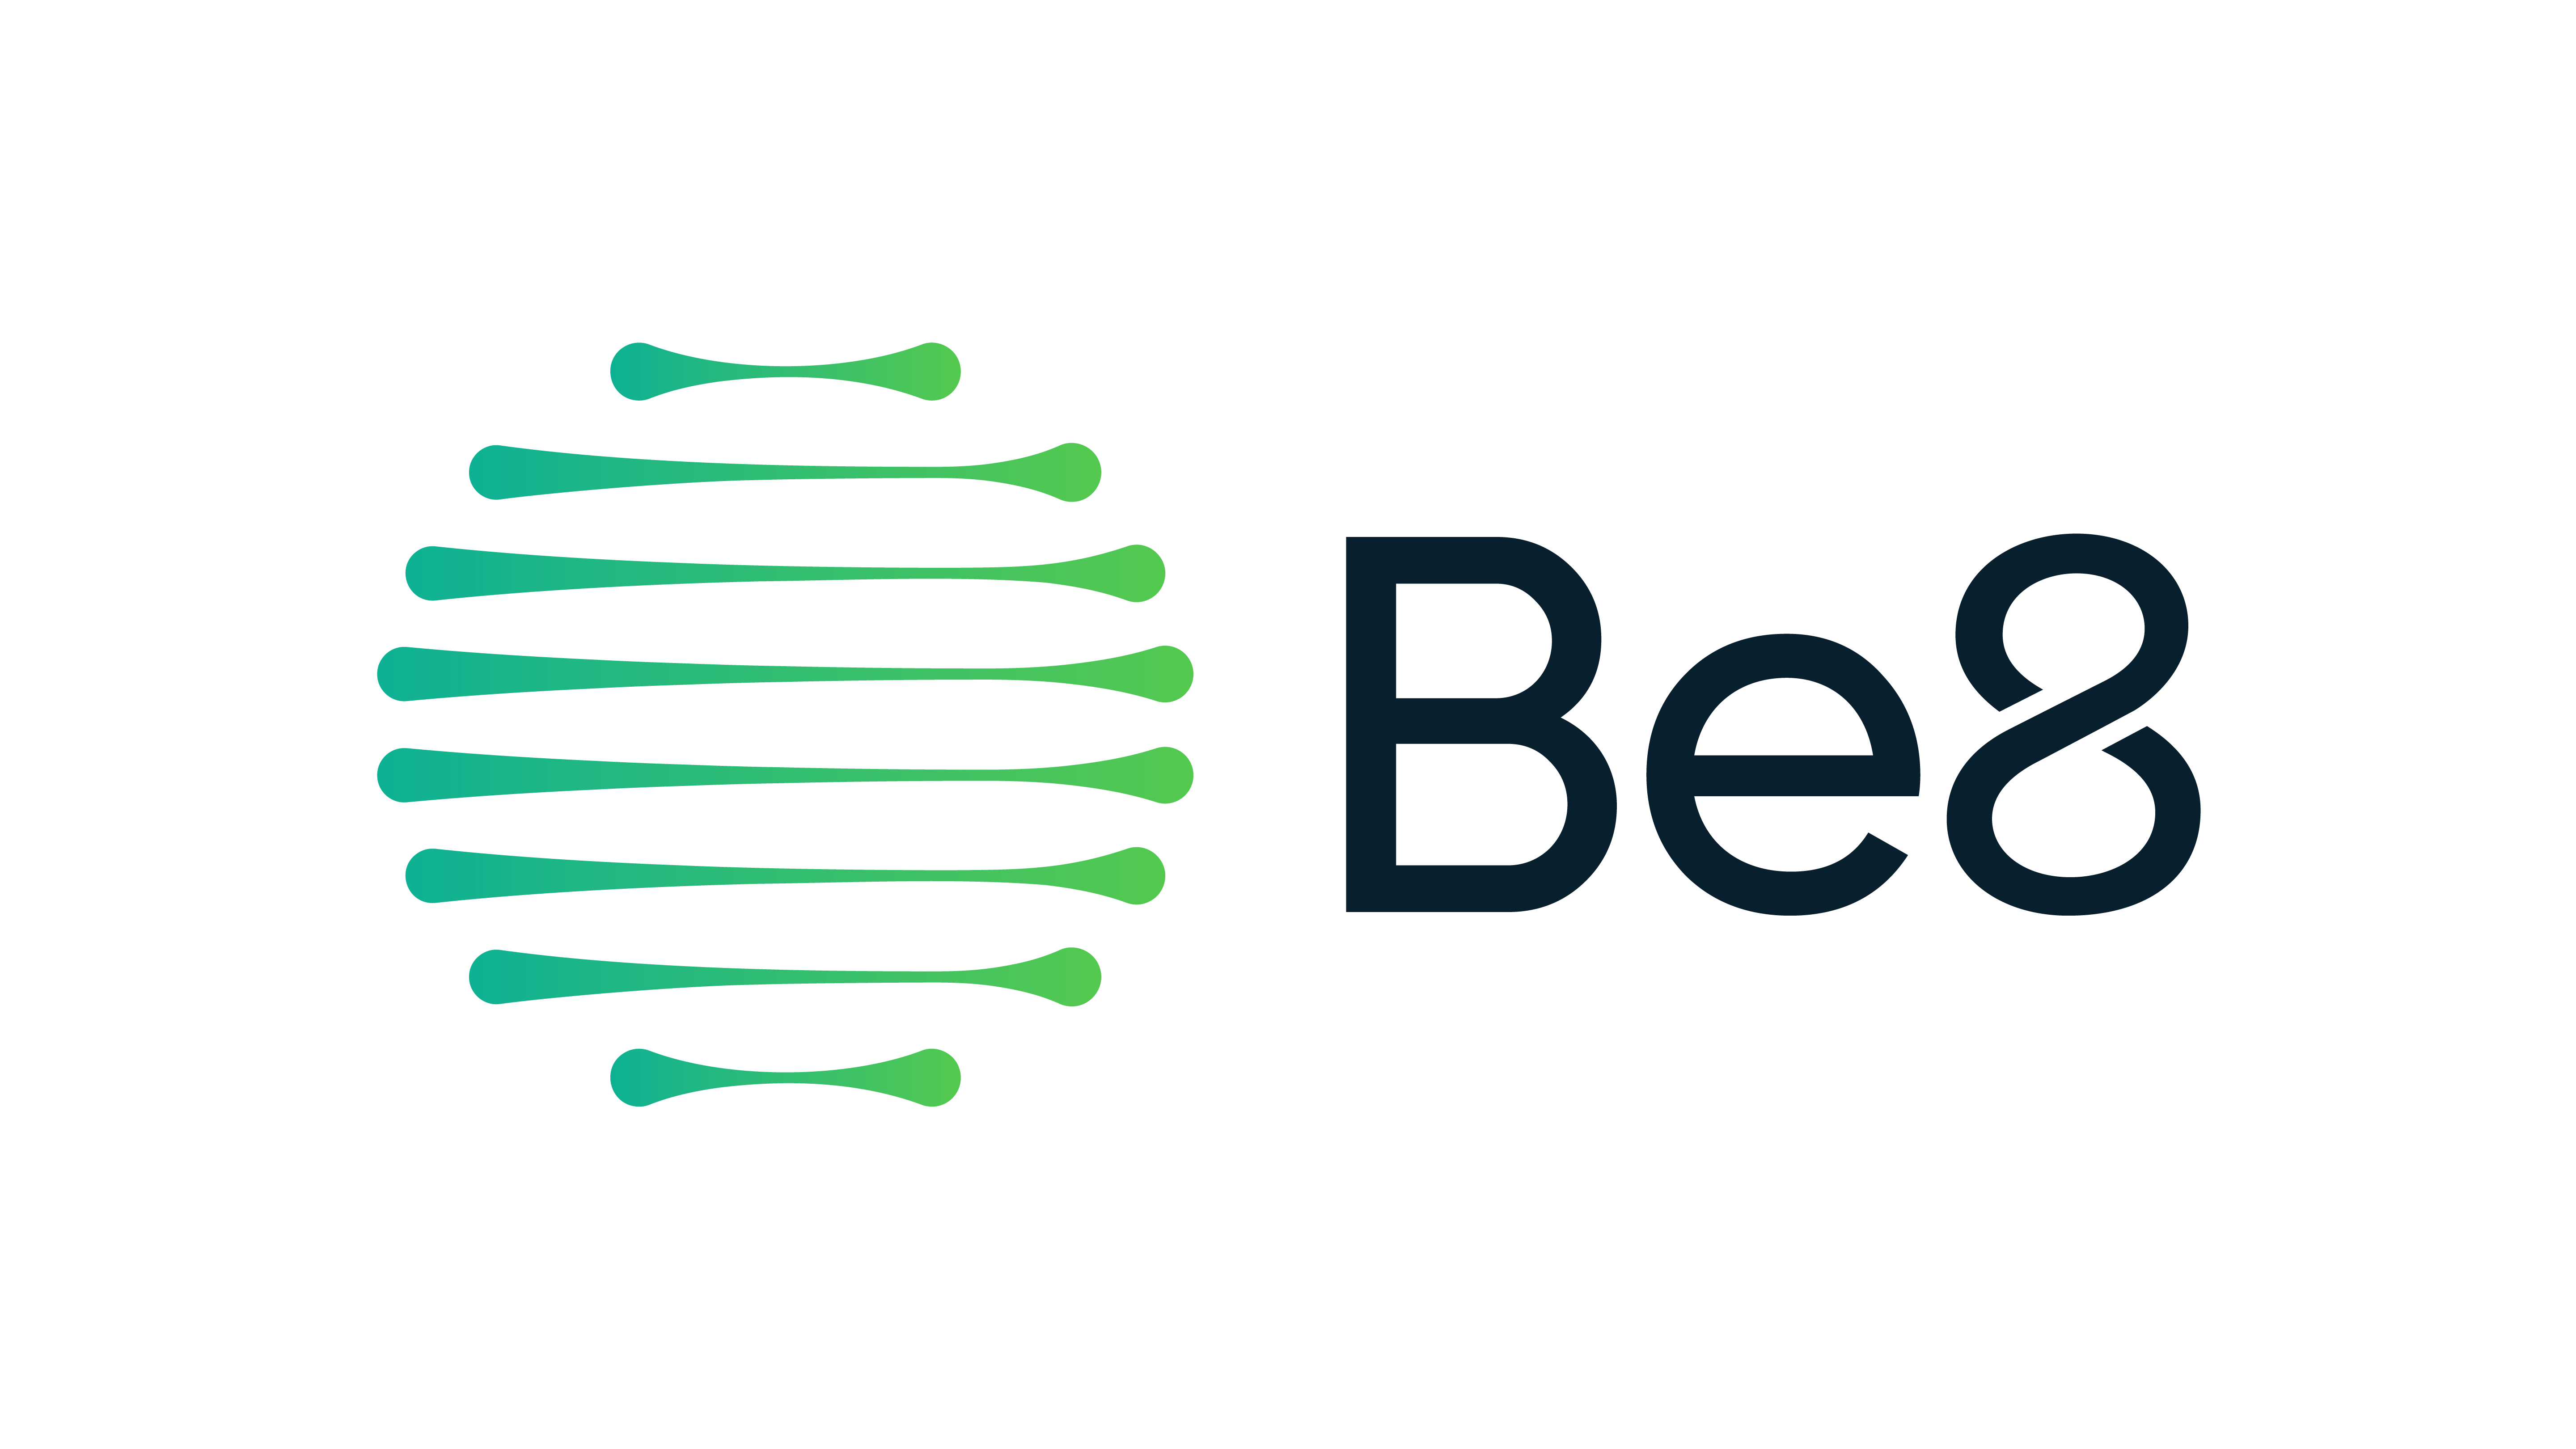 BSBIOS ahora es Be8:  la nueva marca refuerza la evolución de la compañía en el área de las energías renovables y la apuesta por la sostenibilidad